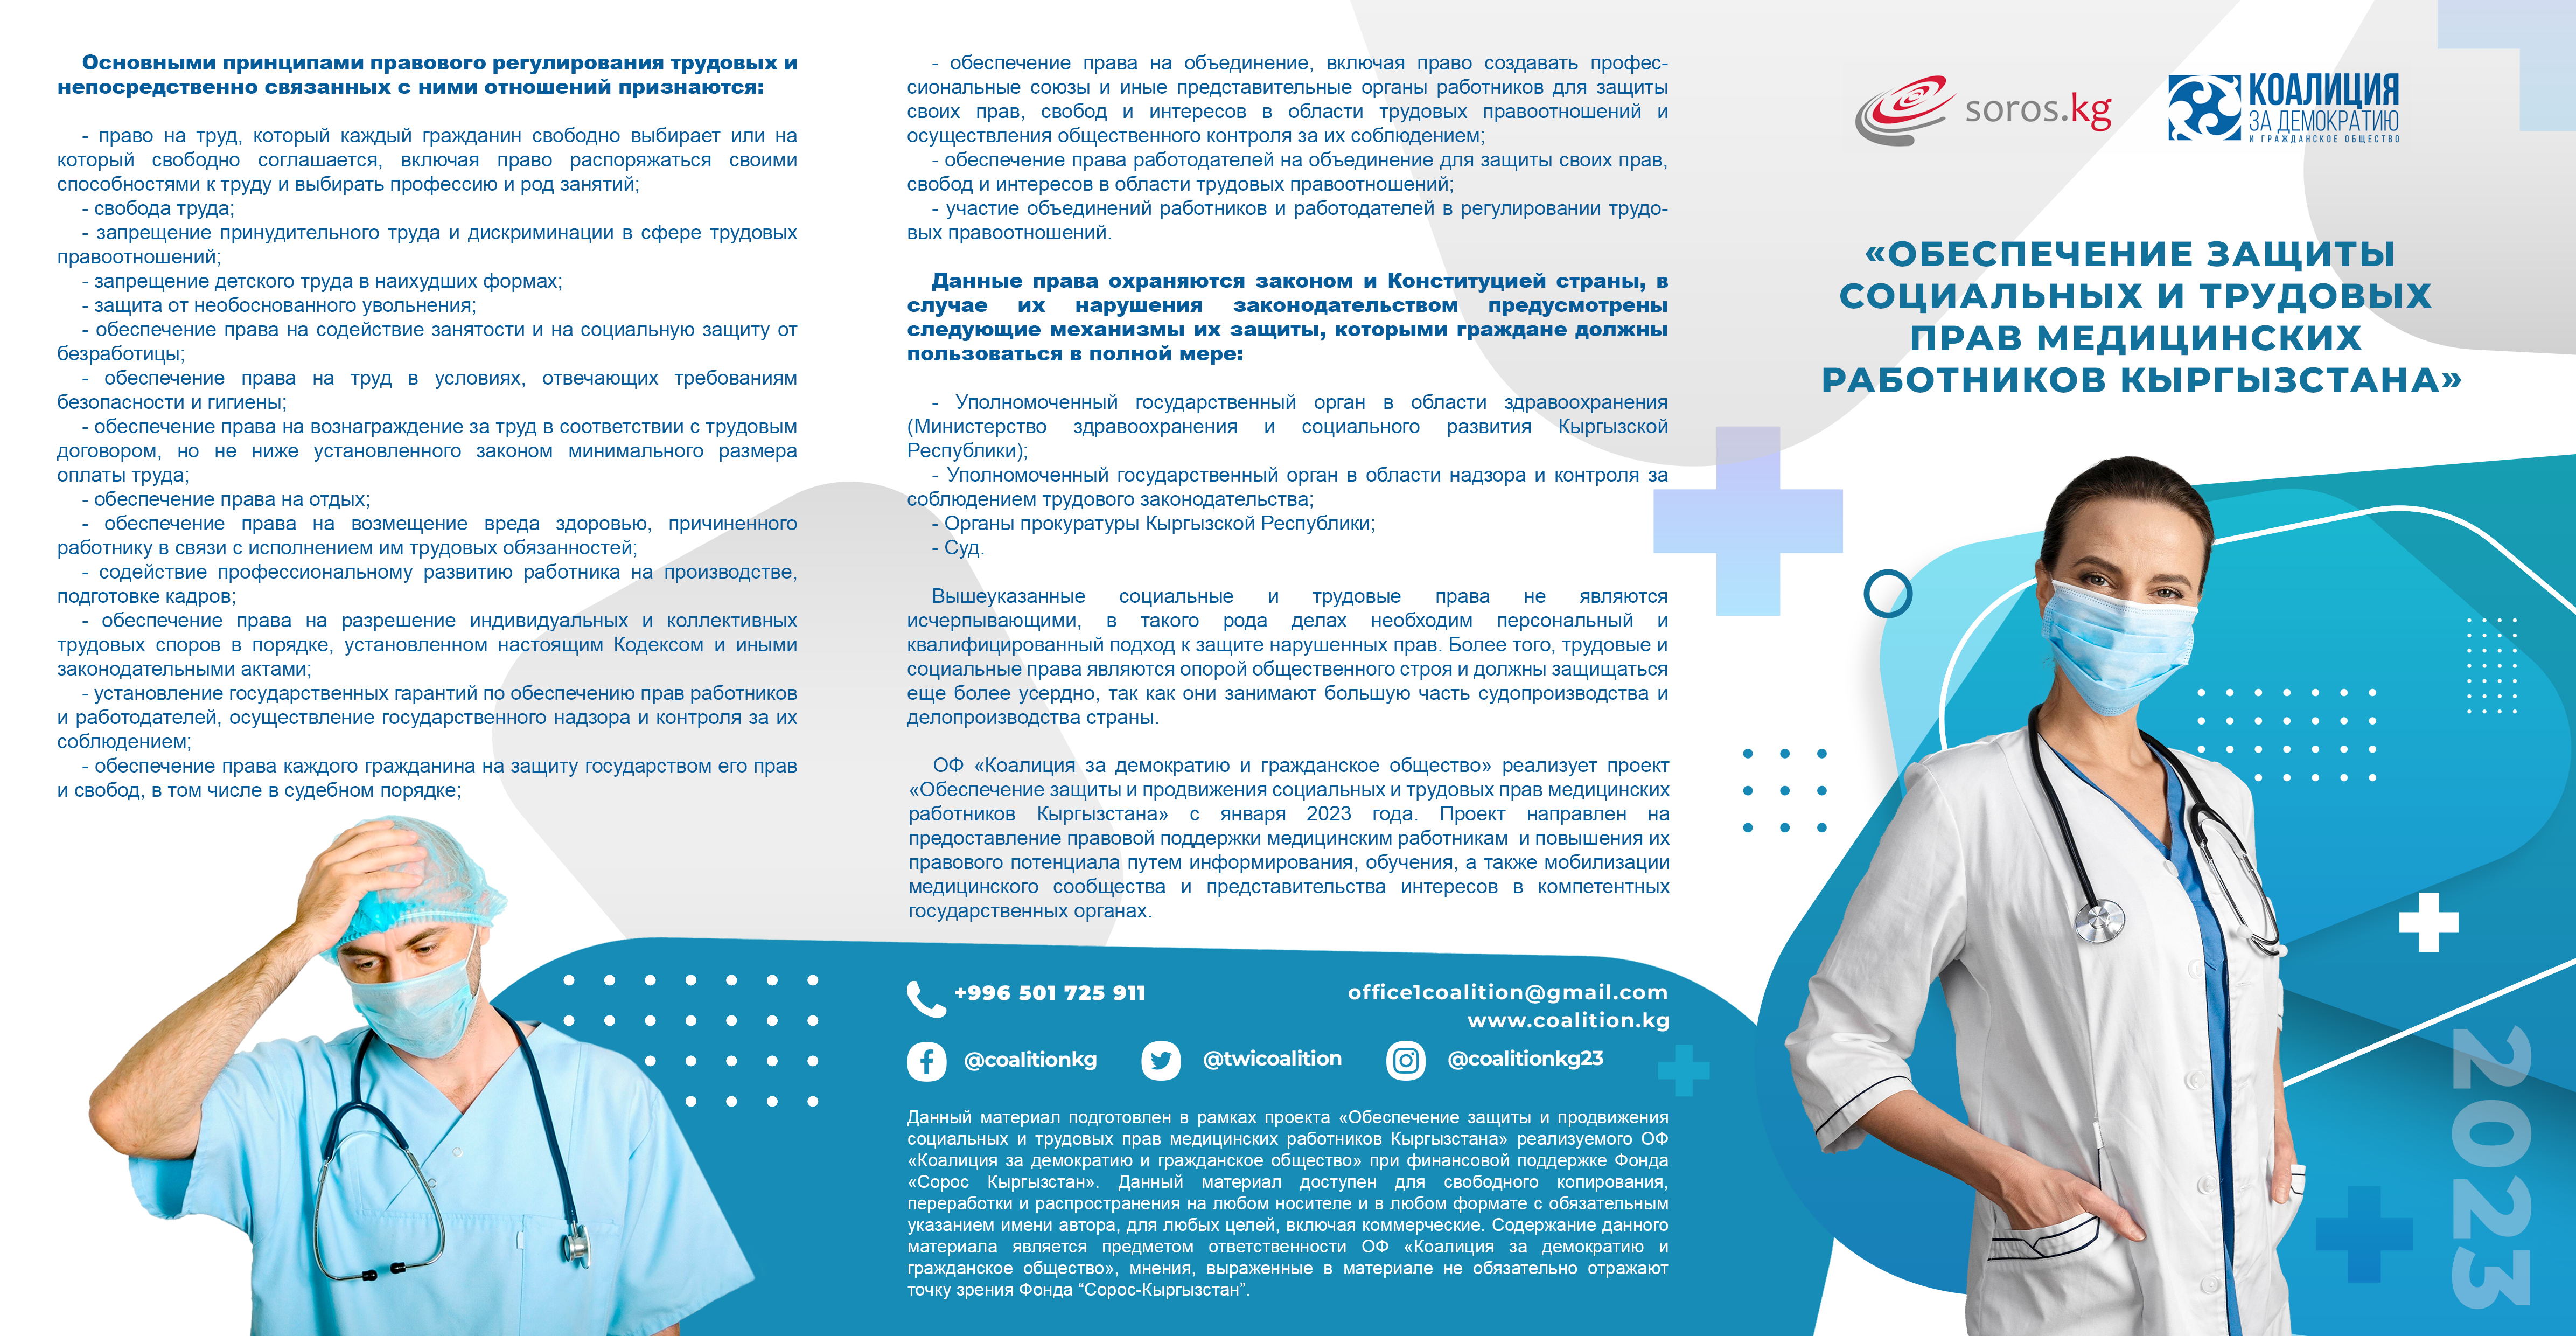 (Русский) Обеспечение защиты социальных и трудовых прав медицинских работников Кыргызстана